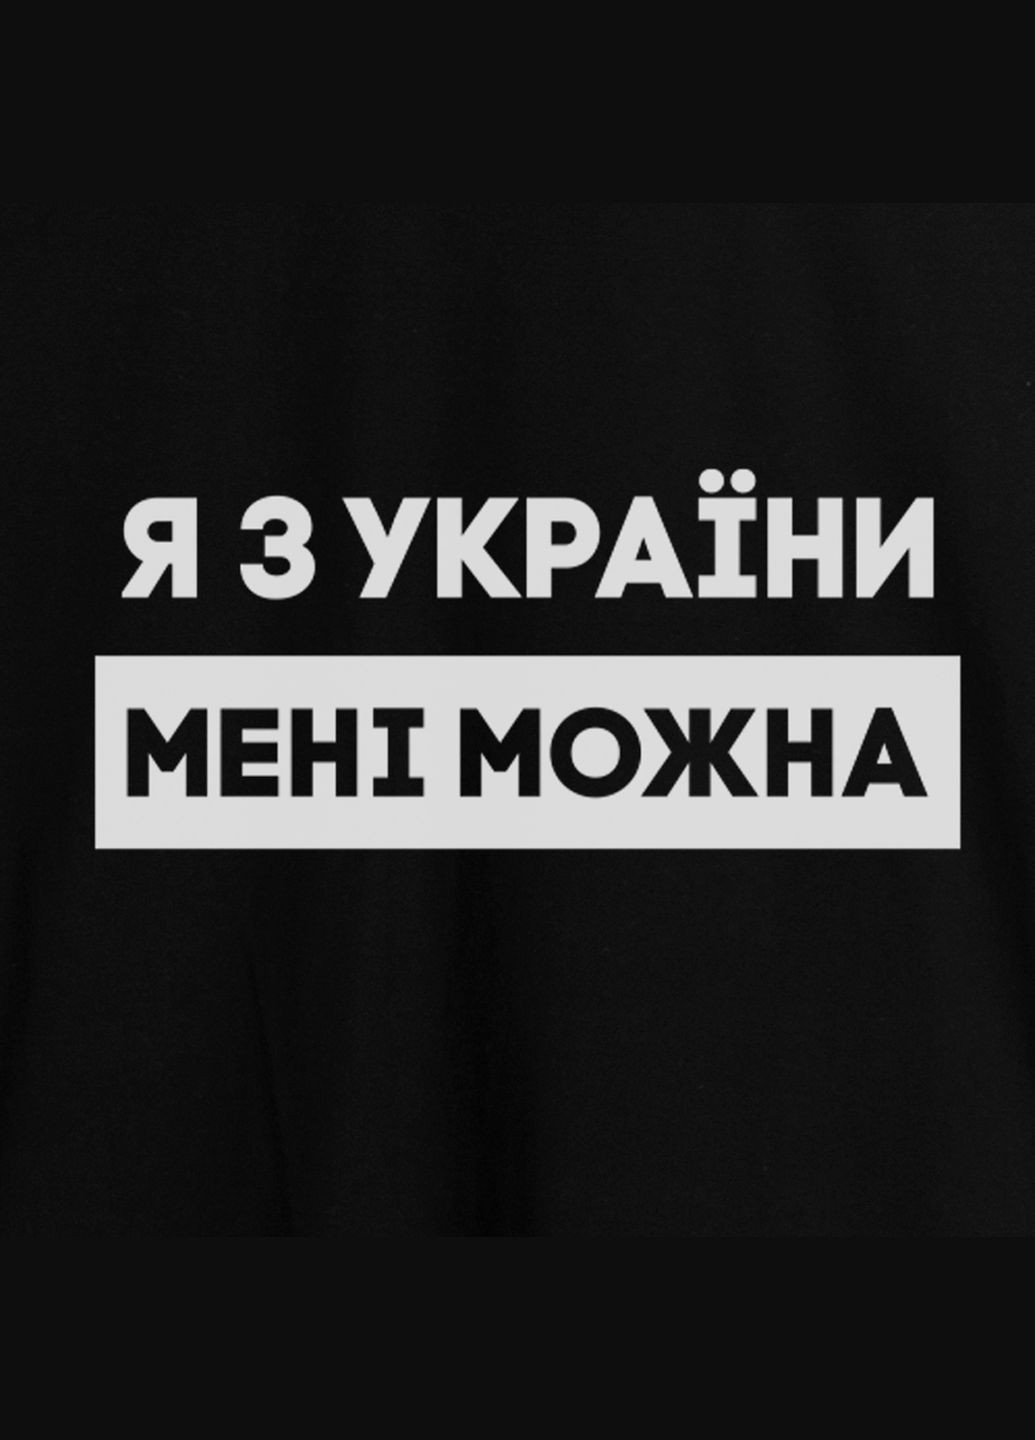 Чорна футболка чоловіча "я з україни мені можна" чорна (bd-f-221) BeriDari